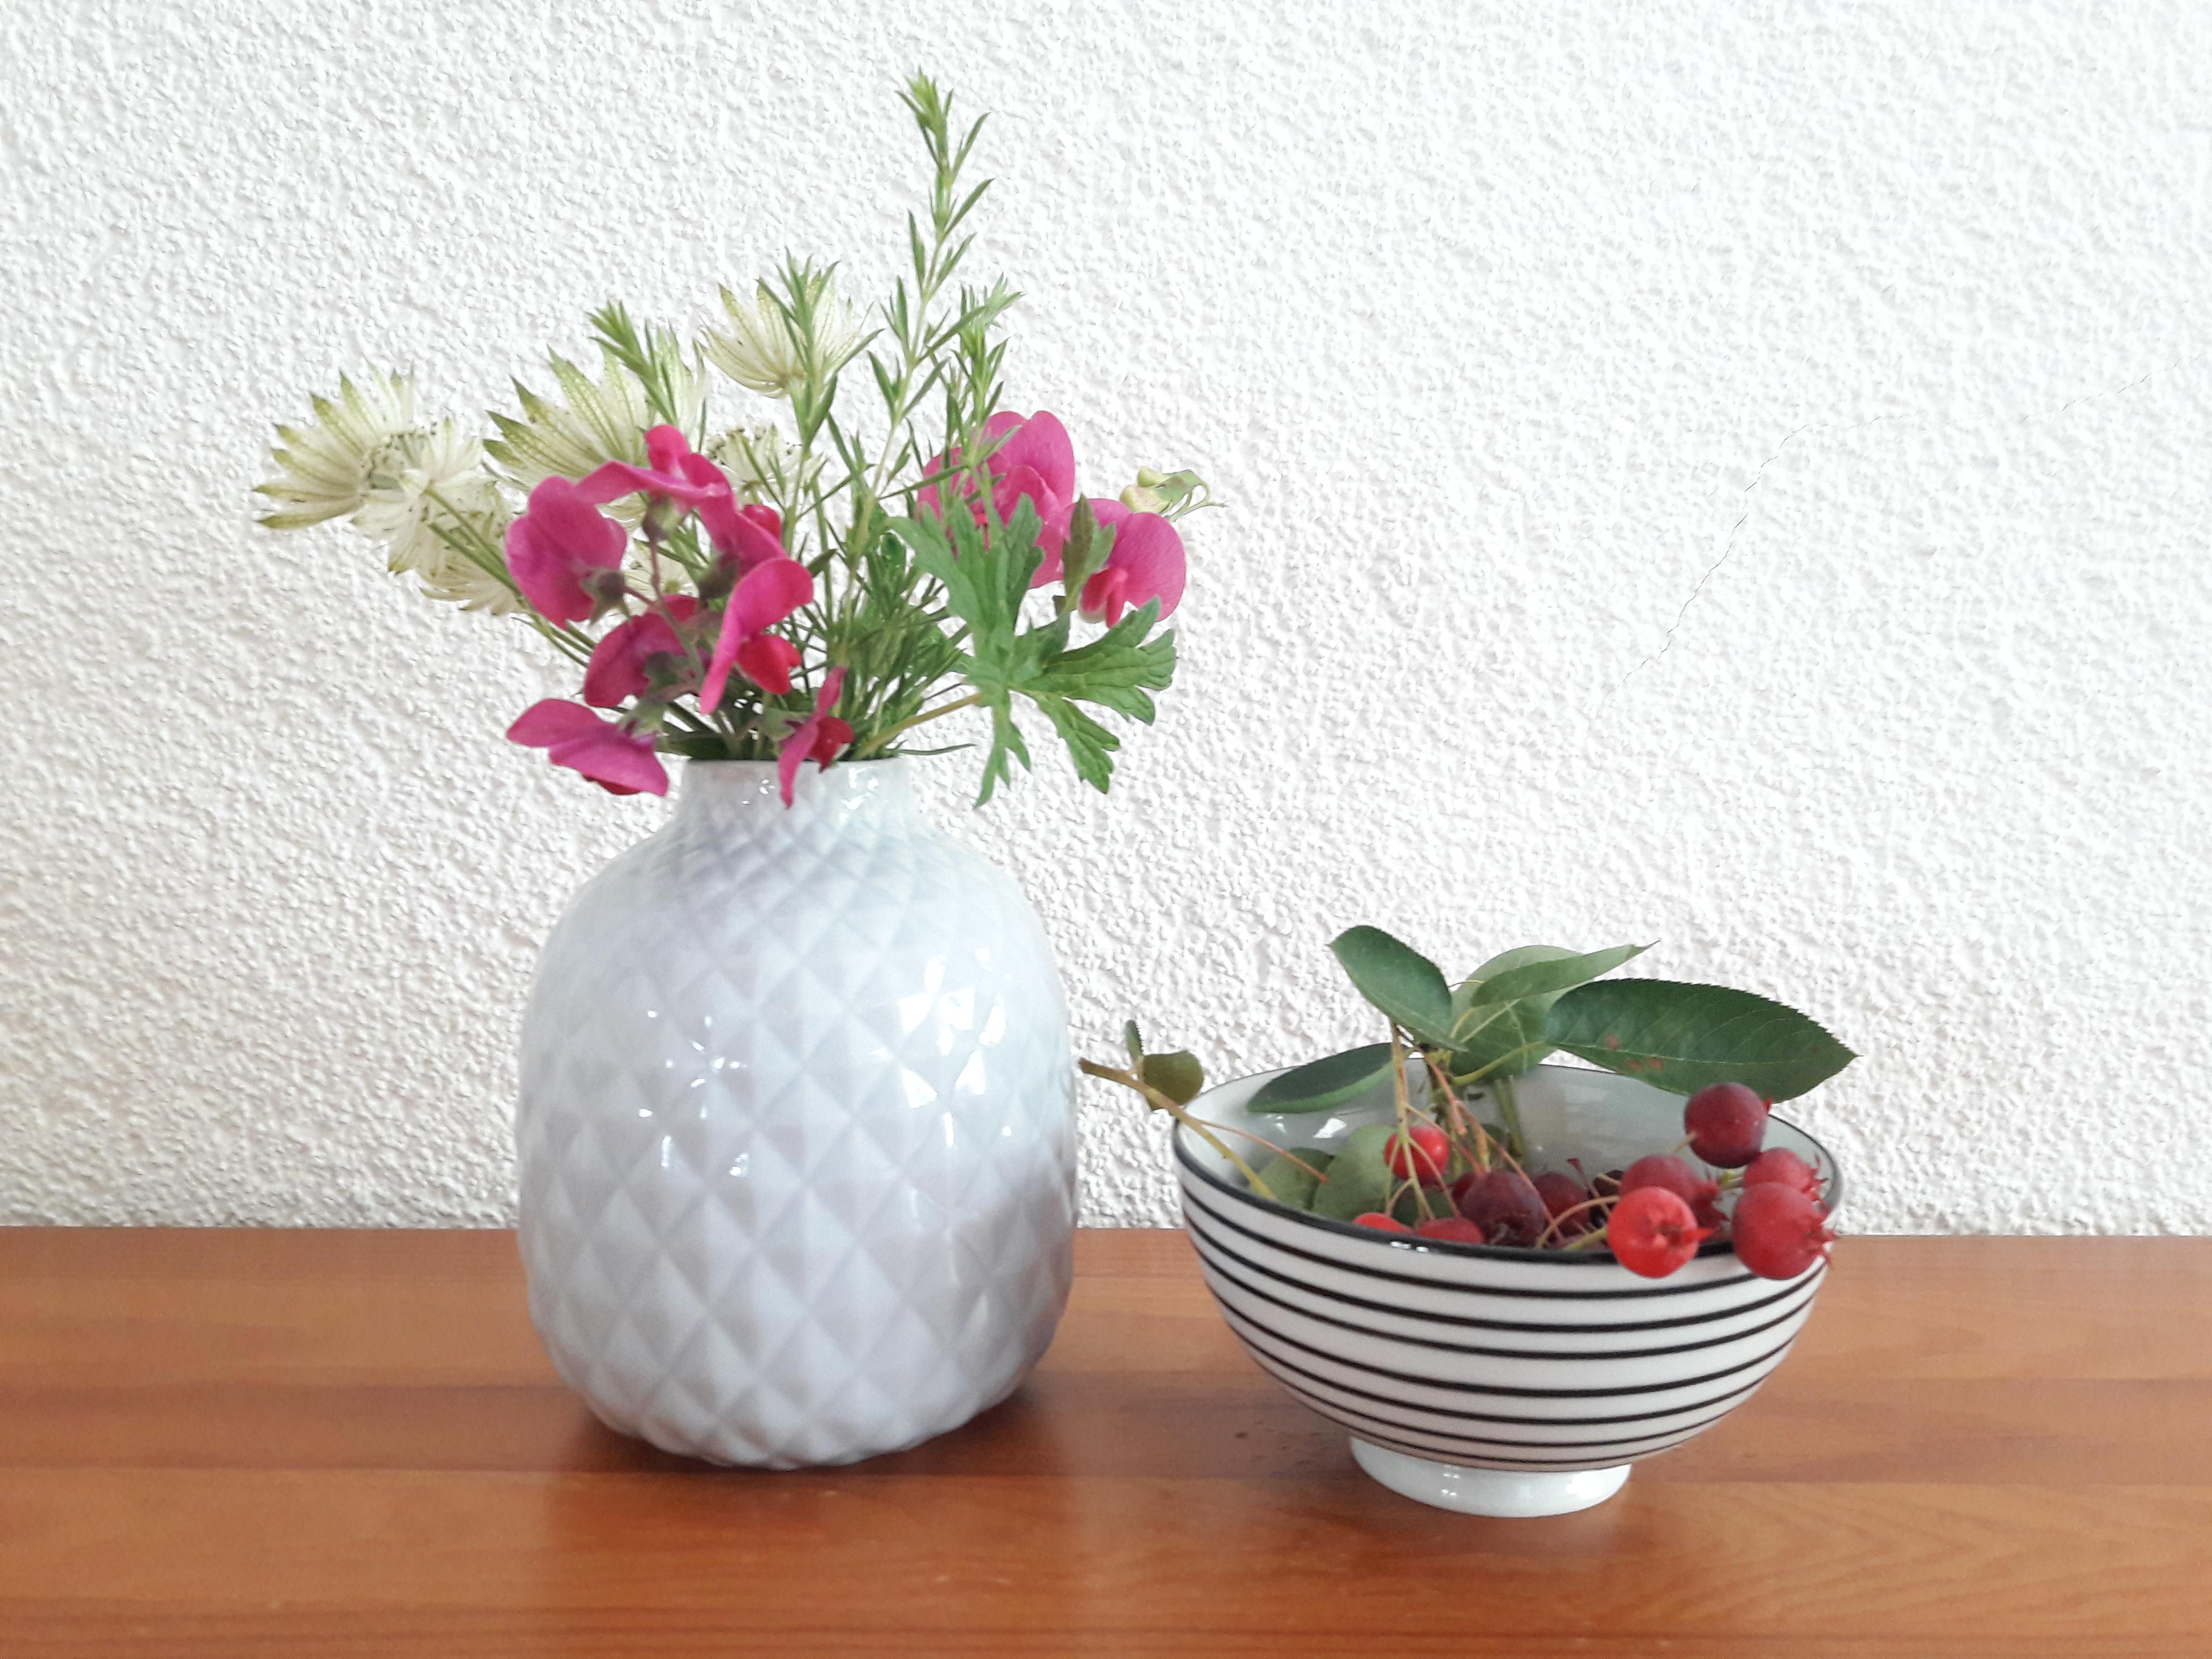 Freche Früchtchen aus dem #garten 
#gardening #sommer #felsenbirne #lecker #schale #housedoctor #vase 